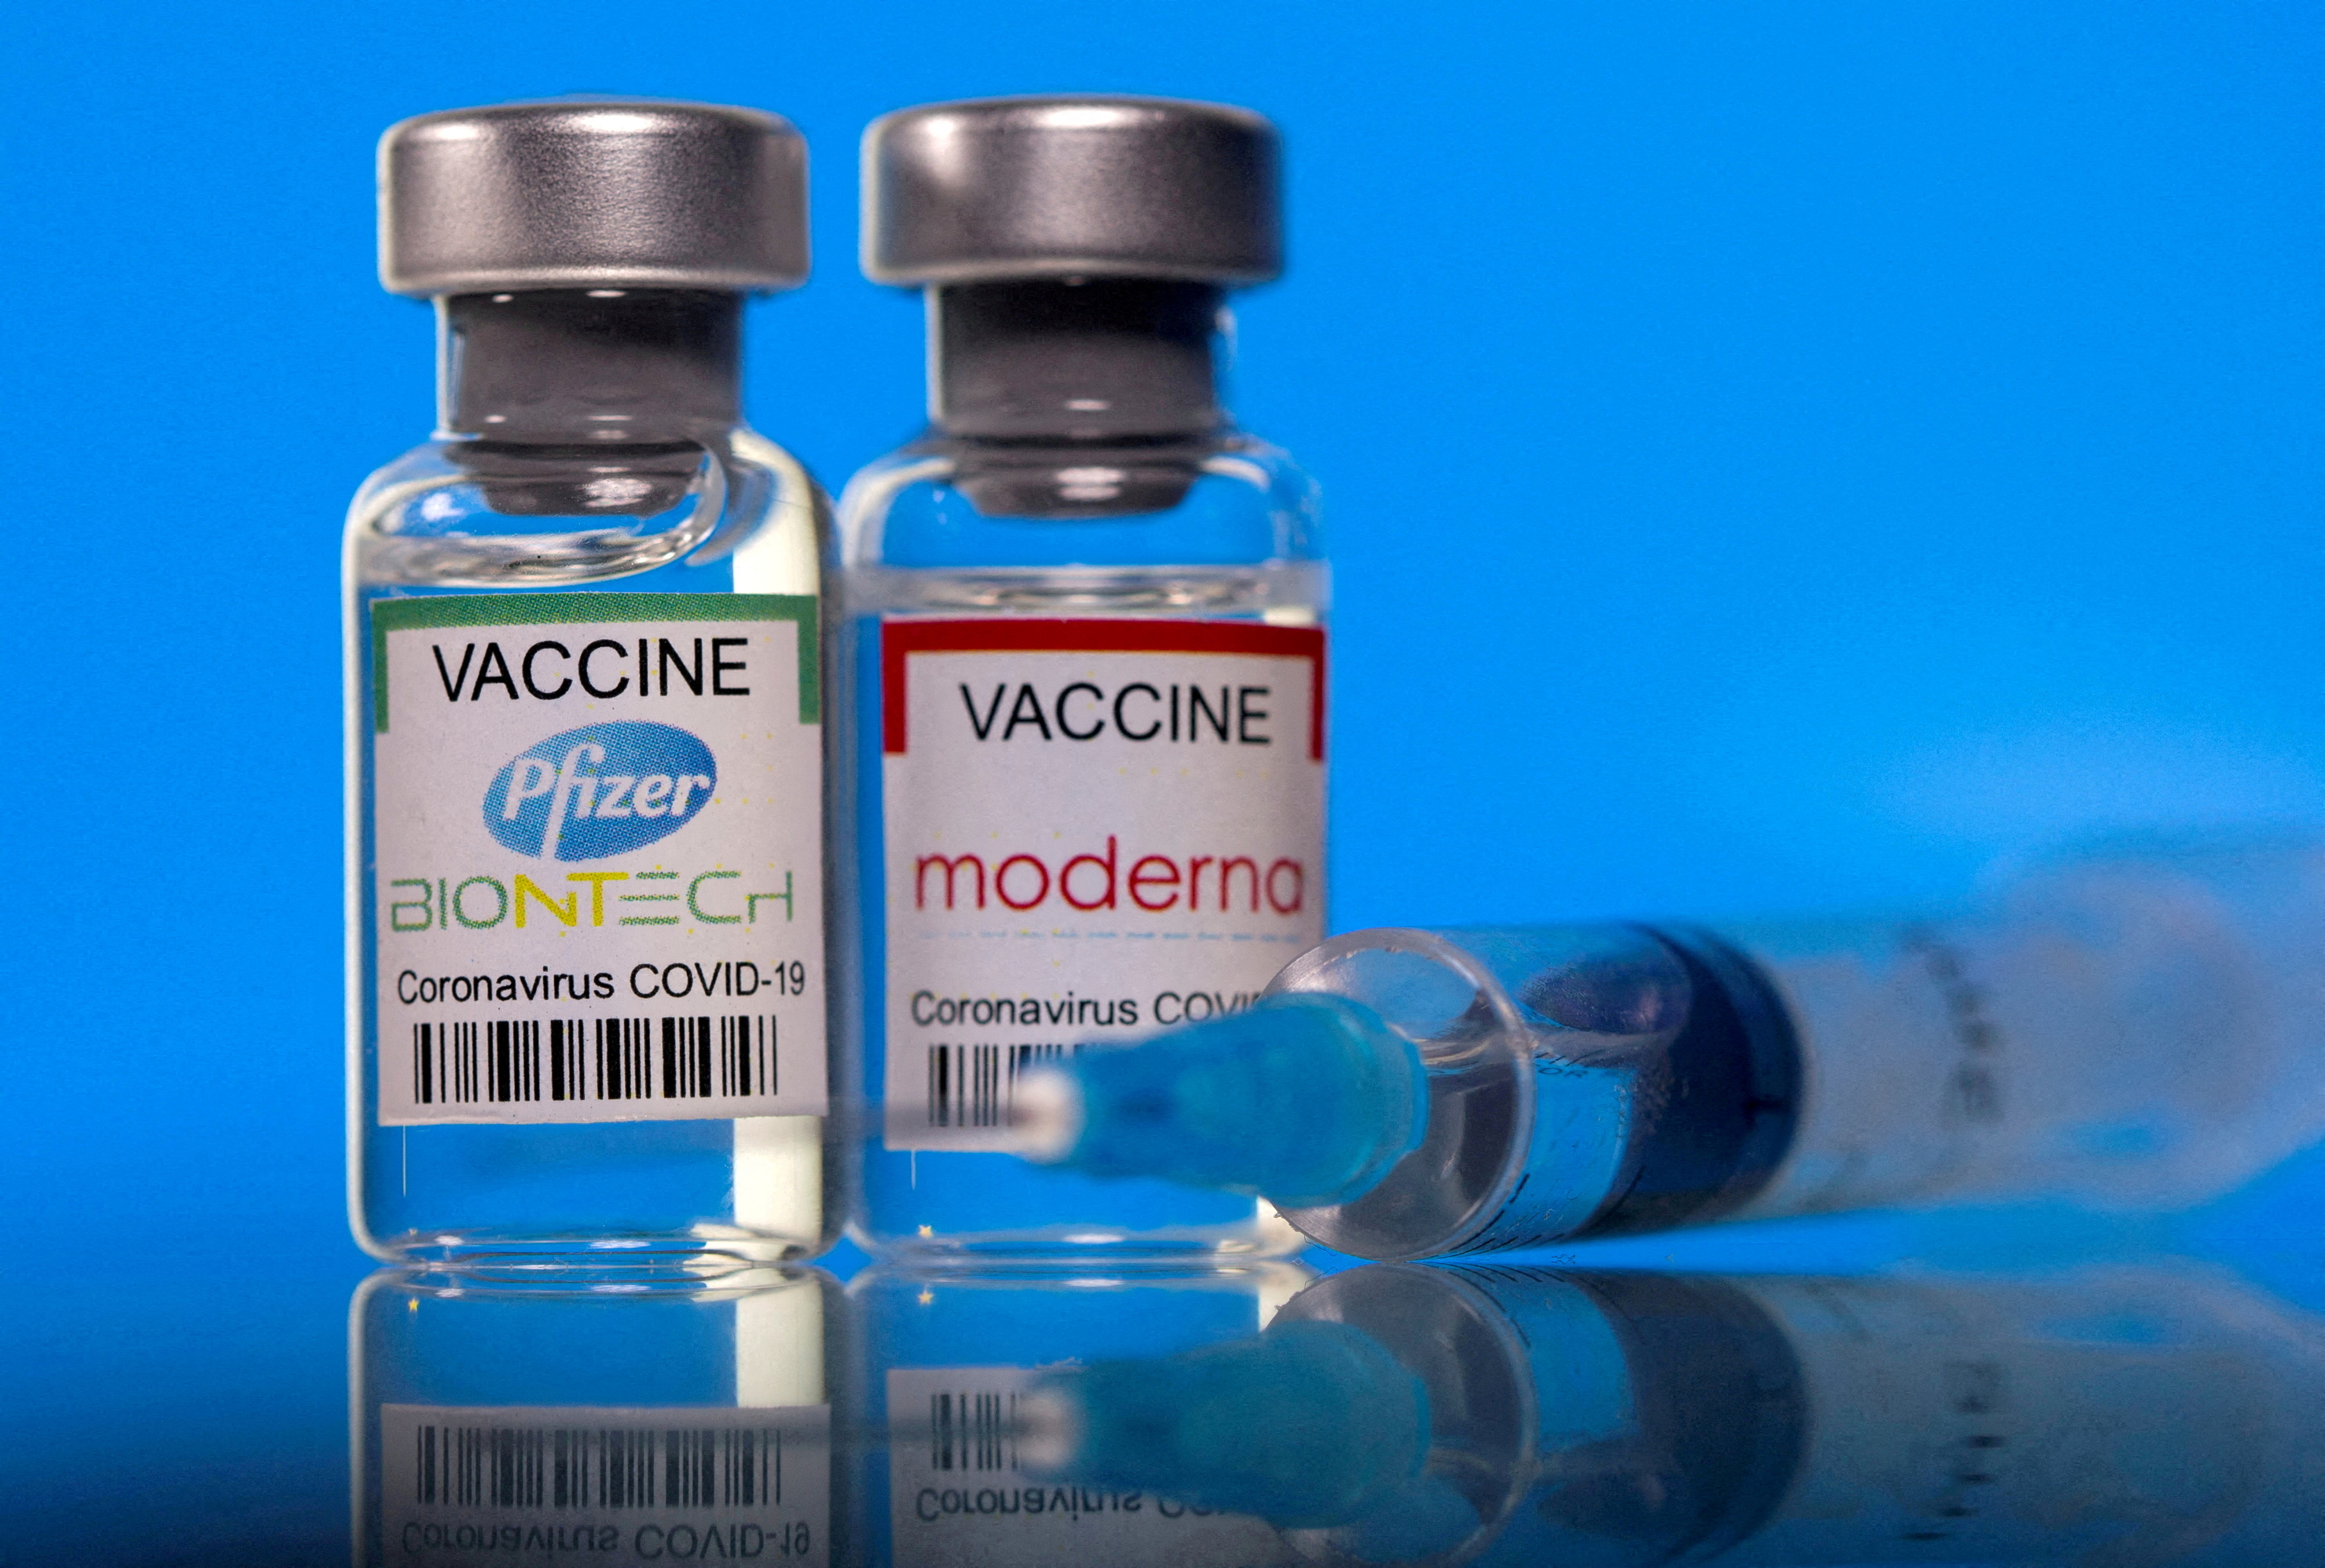 FOTO DE ARCHIVO: Los viales con las etiquetas de la vacuna contra la enfermedad del coronavirus (COVID-19) de Pfizer-BioNTech y Moderna se ven en esta foto de ilustración tomada el 19 de marzo de 2021. REUTERS/Dado Ruvic